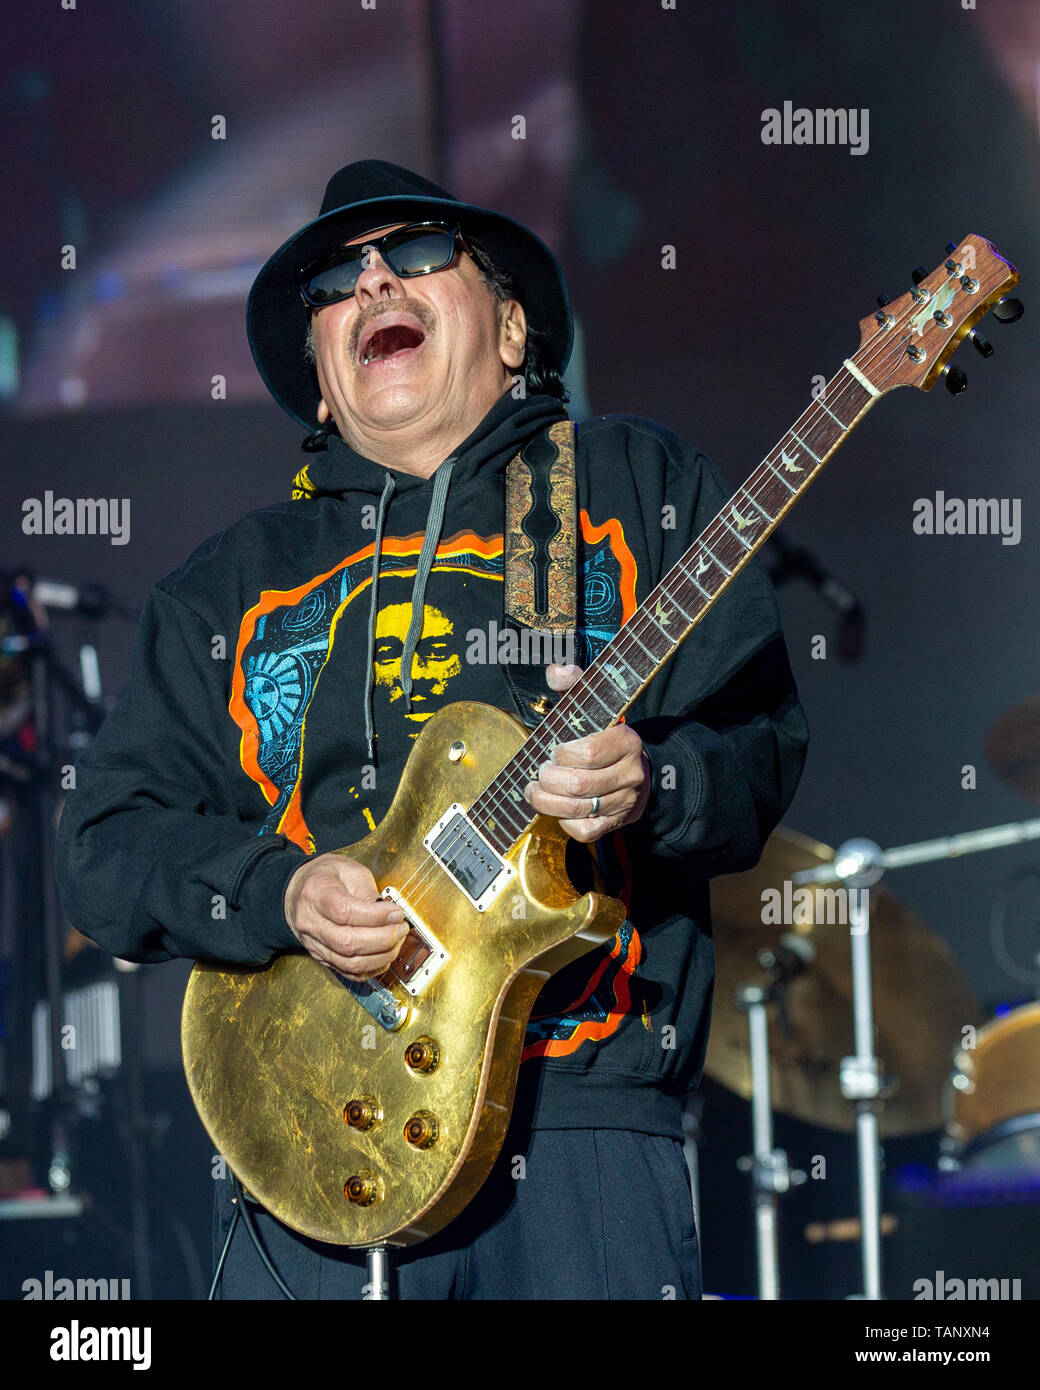 Mayo 26, 2019 - Napa, California, EE.UU. - Carlos Santana durante el Festival de Música BottleRock en Napa, California (Crédito de la Imagen: © Daniel DeSlover/ZUMA Wire) Foto de stock